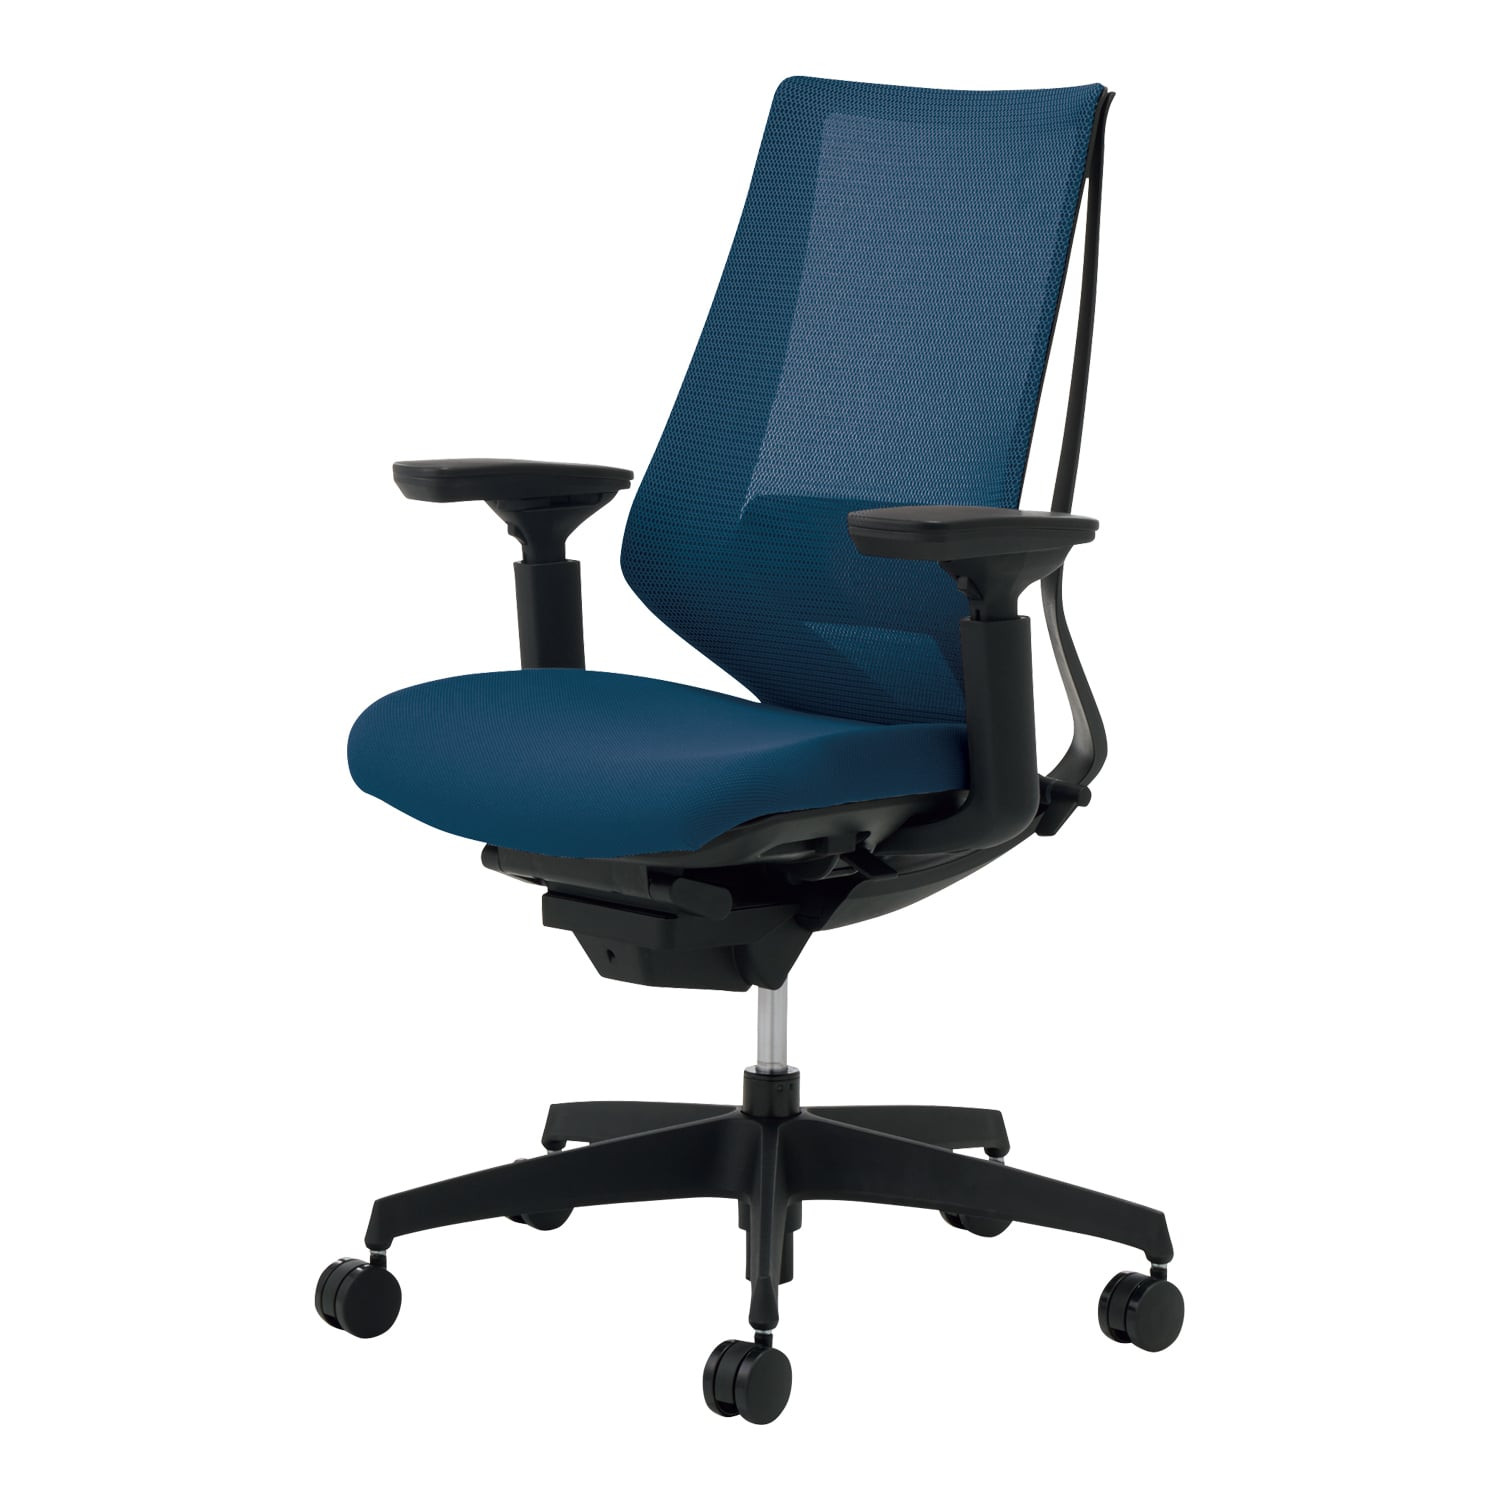 チェア・椅子|オフィス家具やオフィス用品ならオフィス家具通販のカグサポ